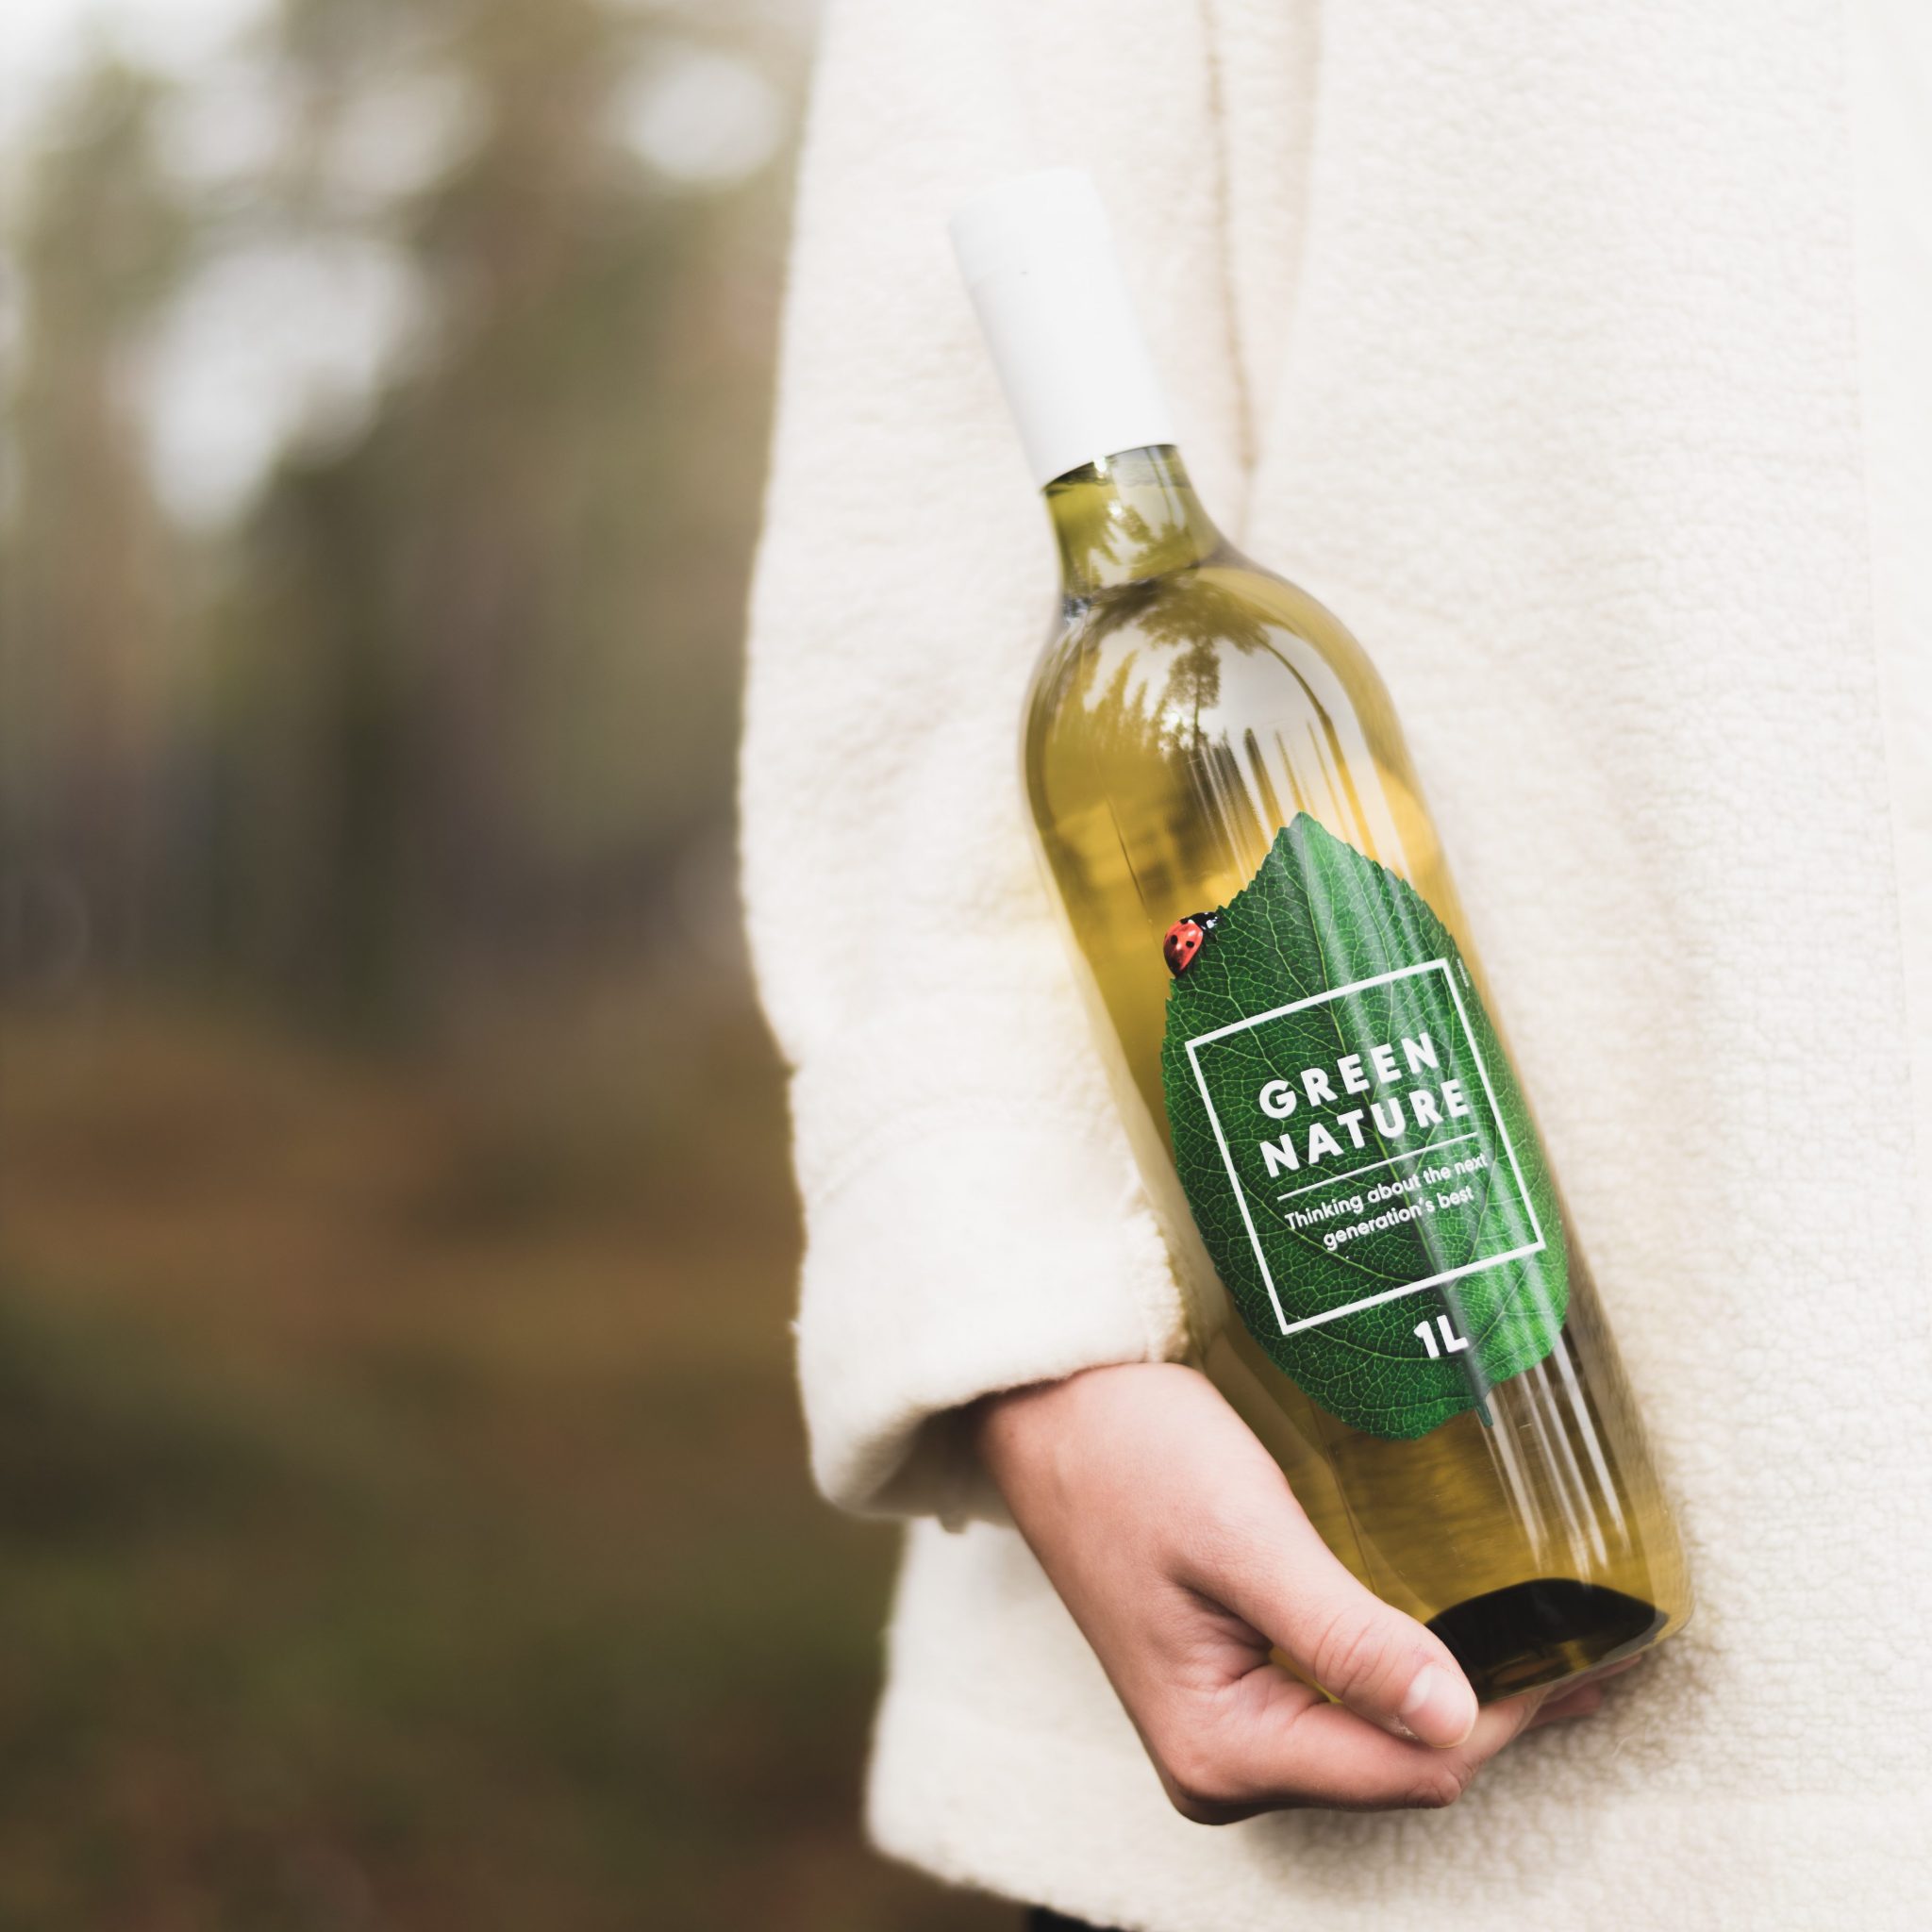 Green Nature wine